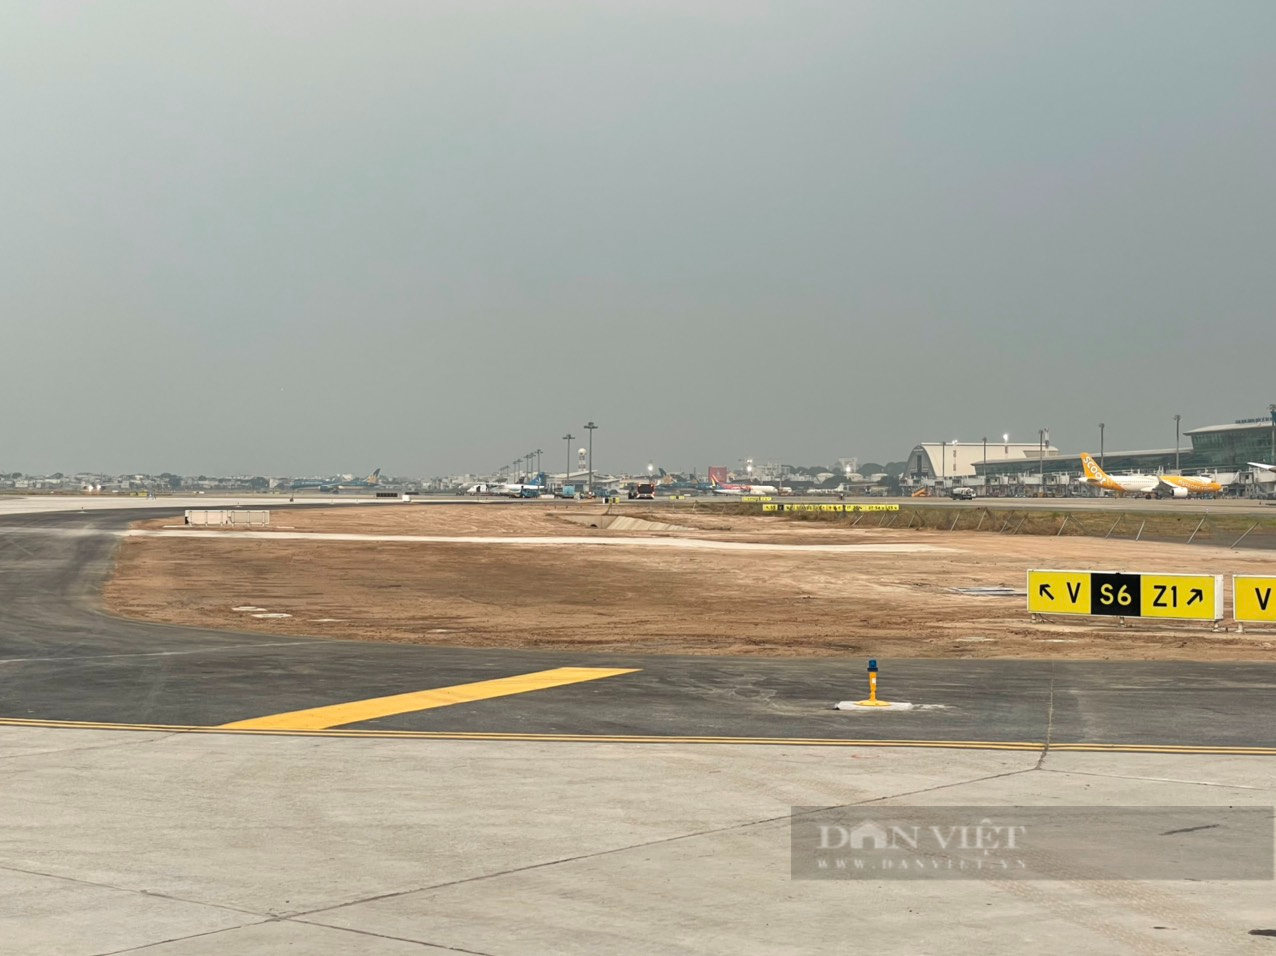 Sân bay Tân Sơn Nhất khai thác đường cất hạ cánh 25R/07L, tăng công suất gấp rưỡi phục vụ khách - Ảnh 1.